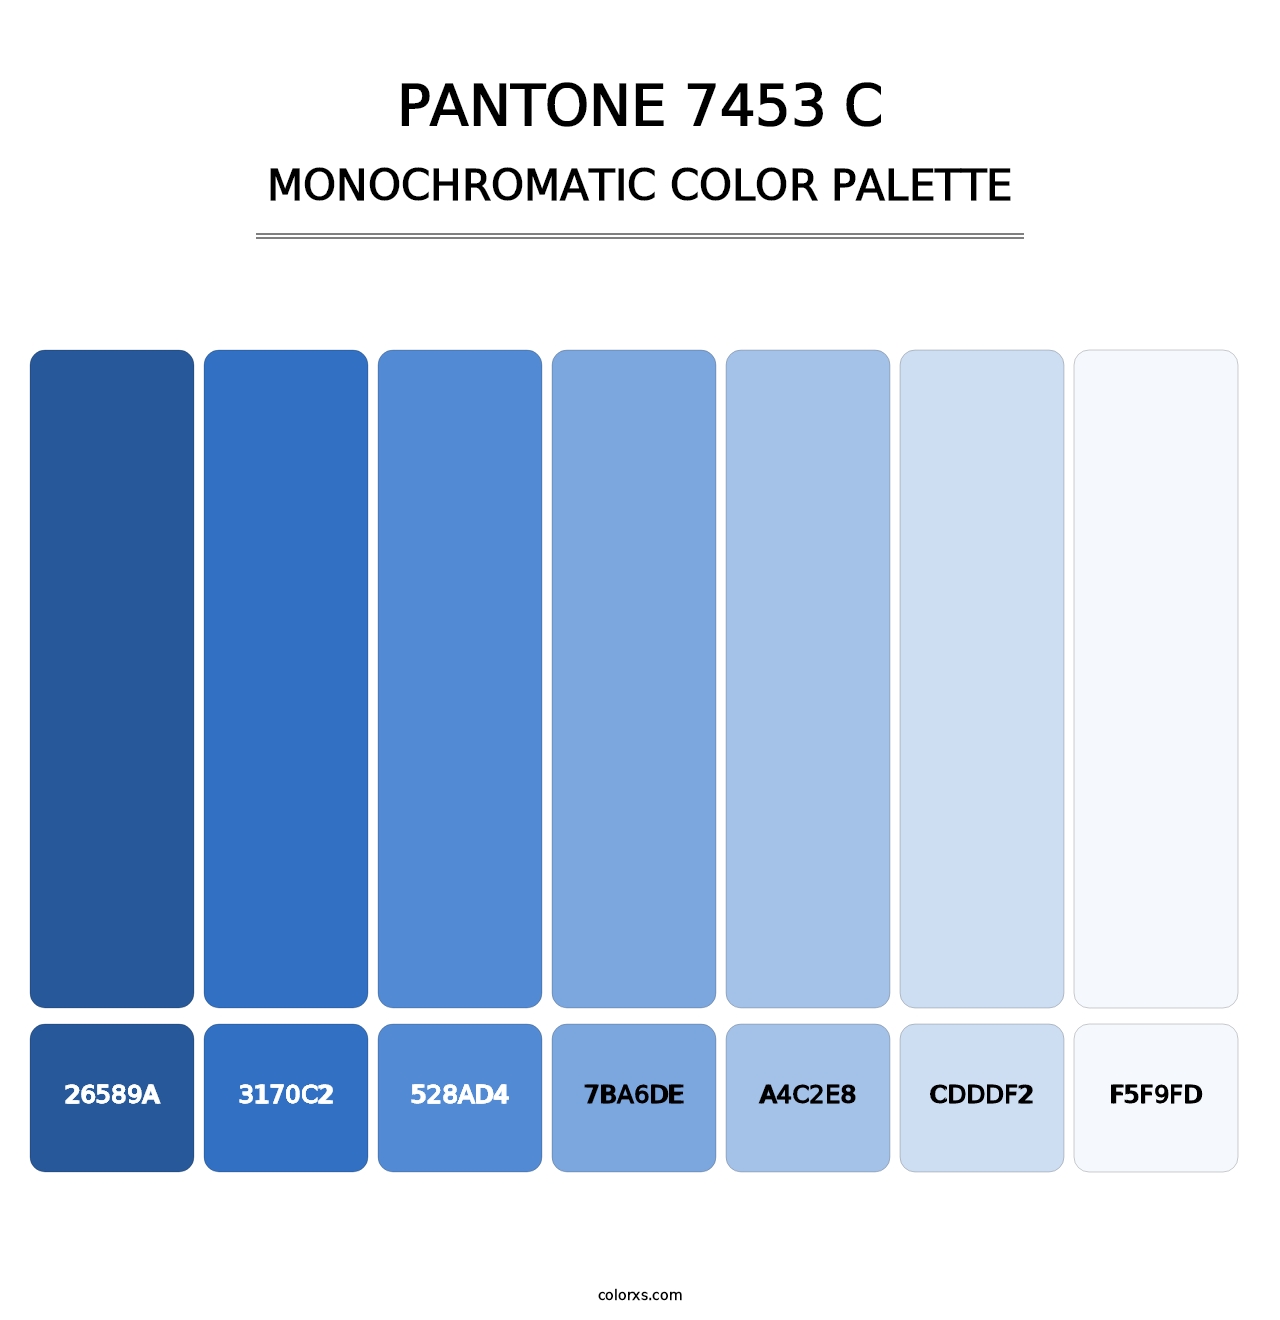 PANTONE 7453 C - Monochromatic Color Palette